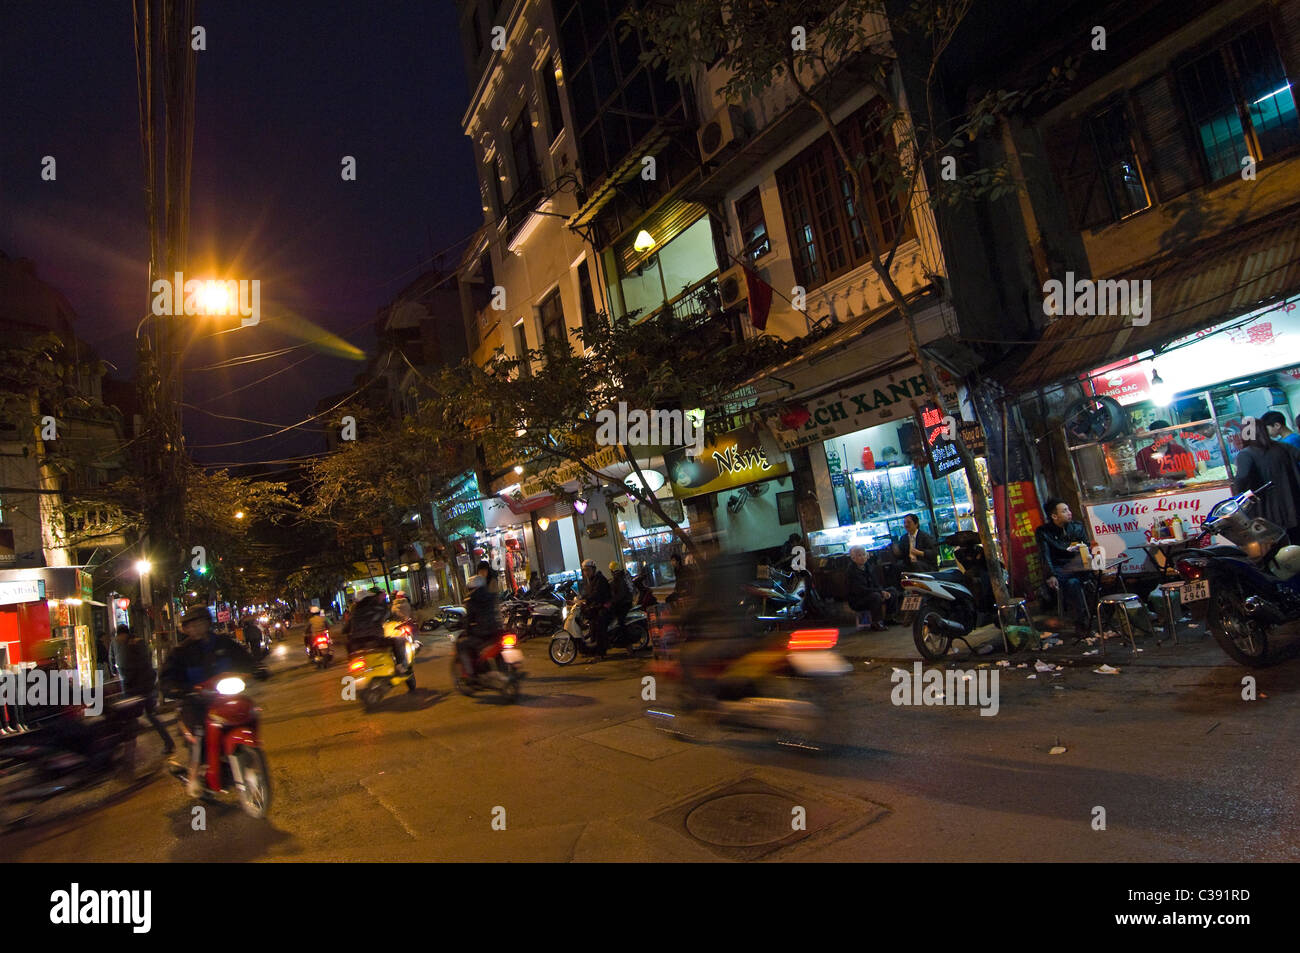 Vista nocturna de una horizontal streetscene típicas del barrio antiguo de Hanoi, con tiendas abiertas para los negocios y los ciclomotores pasando Foto de stock